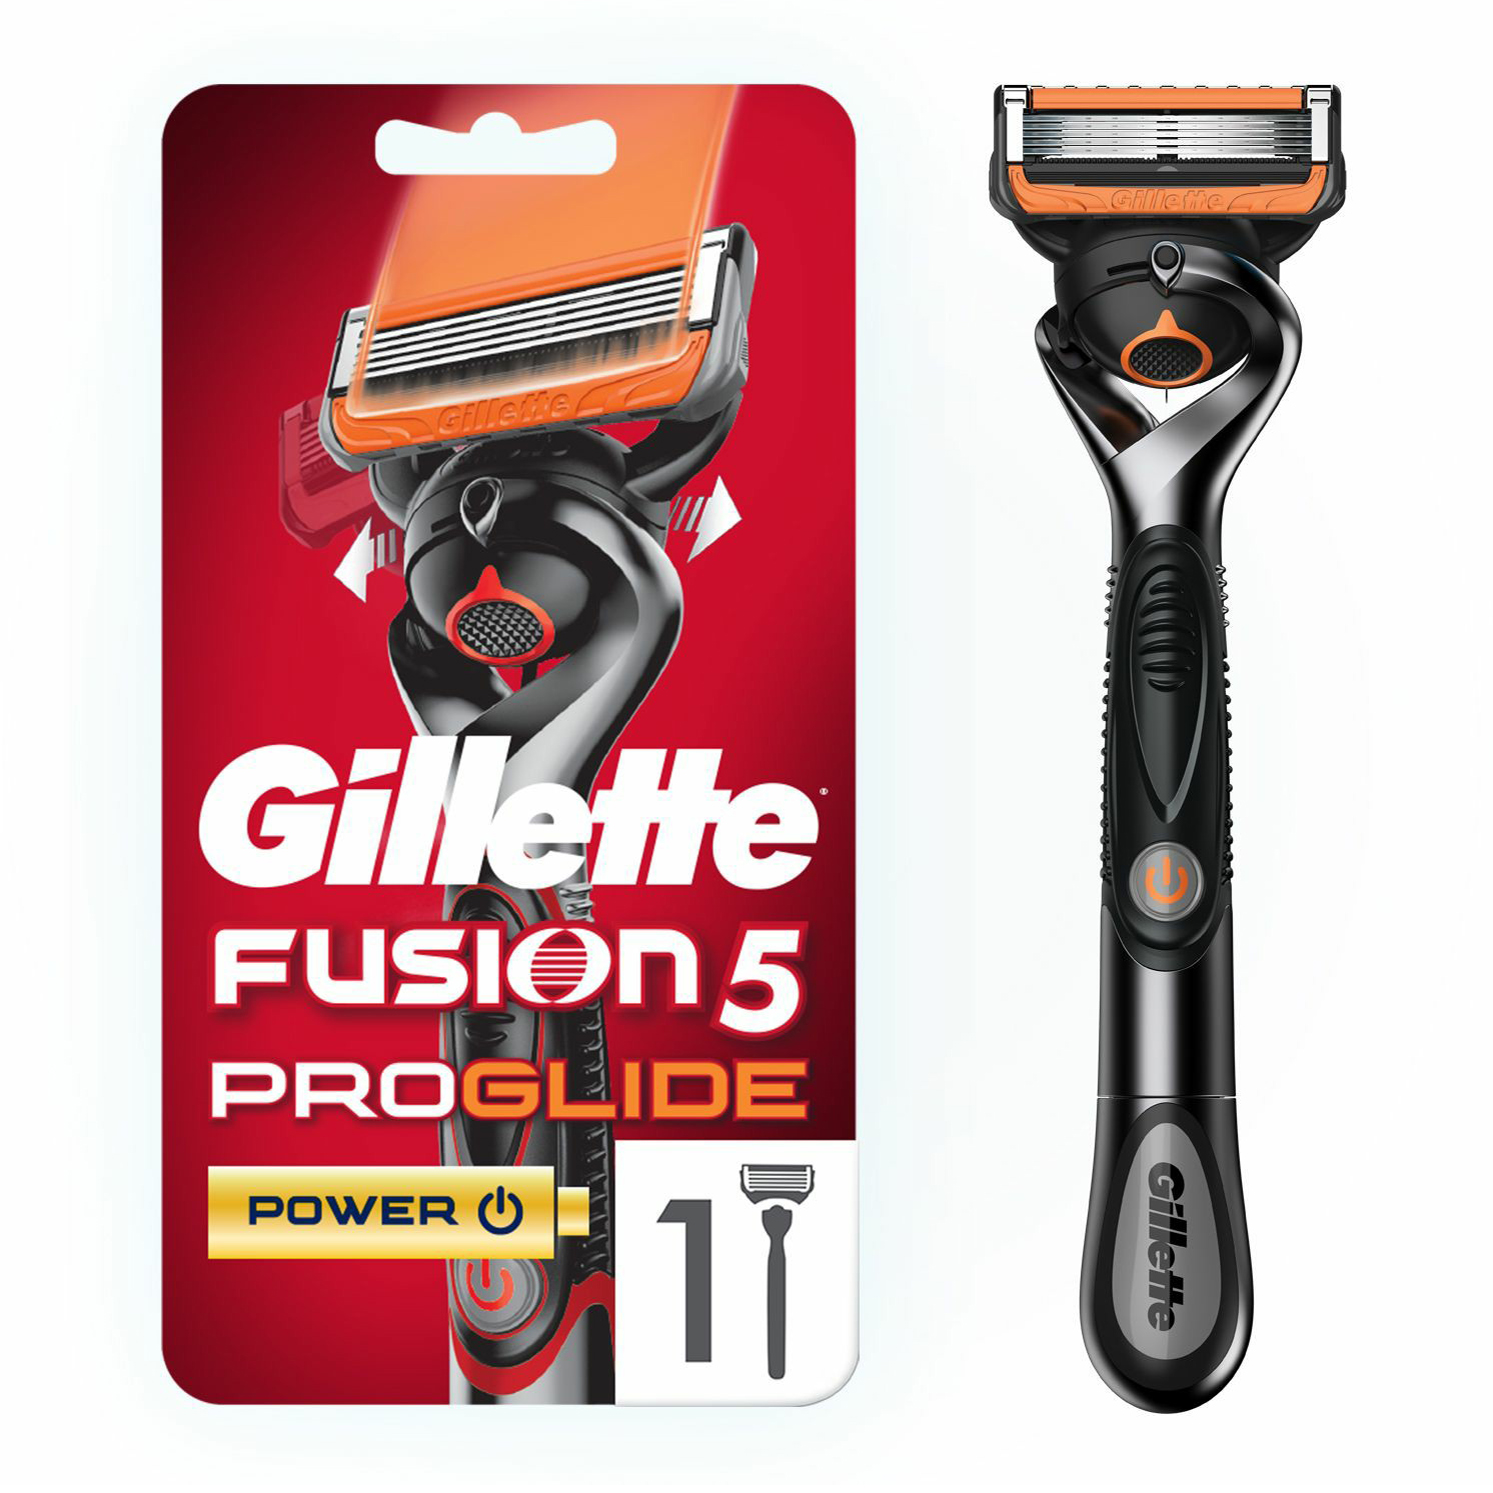 Бритвенный станок со сменной кассетой Gillette Fusion5 ProGlide Power с пятью лезвиями 1шт topbeauty одноразовый станок c 3 лезвиями 4